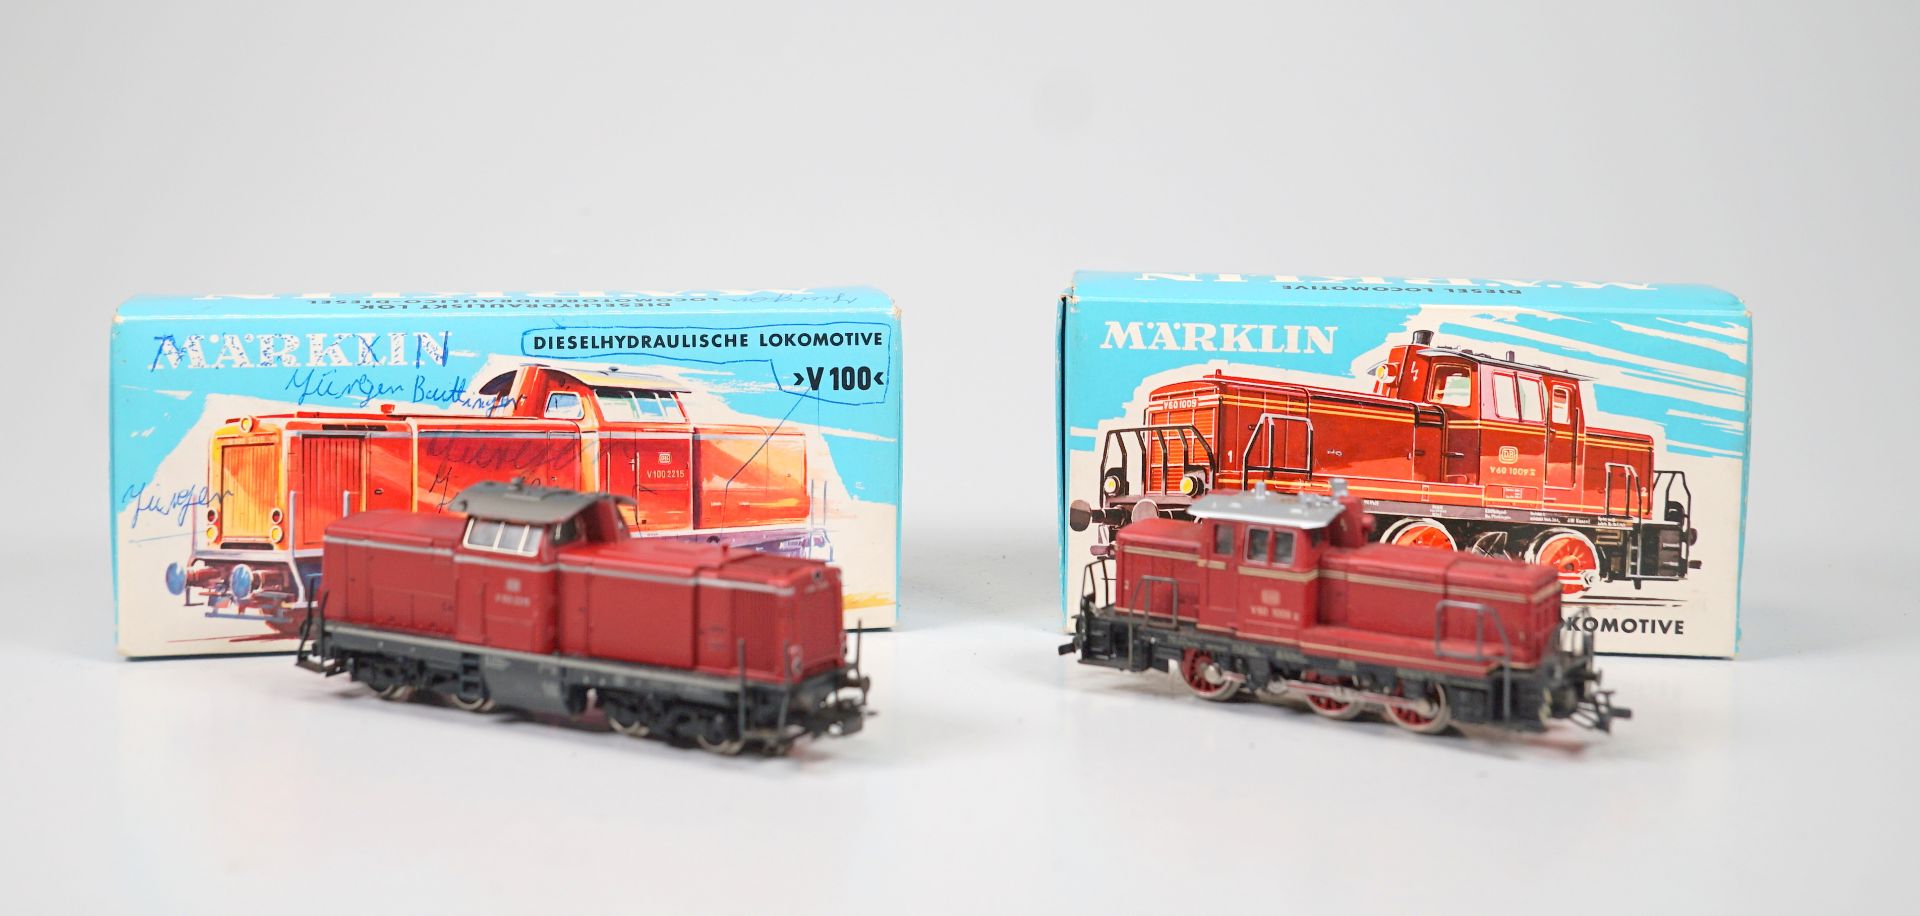 Märklin ab 1954, Gebr. Märklin & Cie., G.m.b.H. Göppingen: 3072 und 3064 Diesellokomotiven